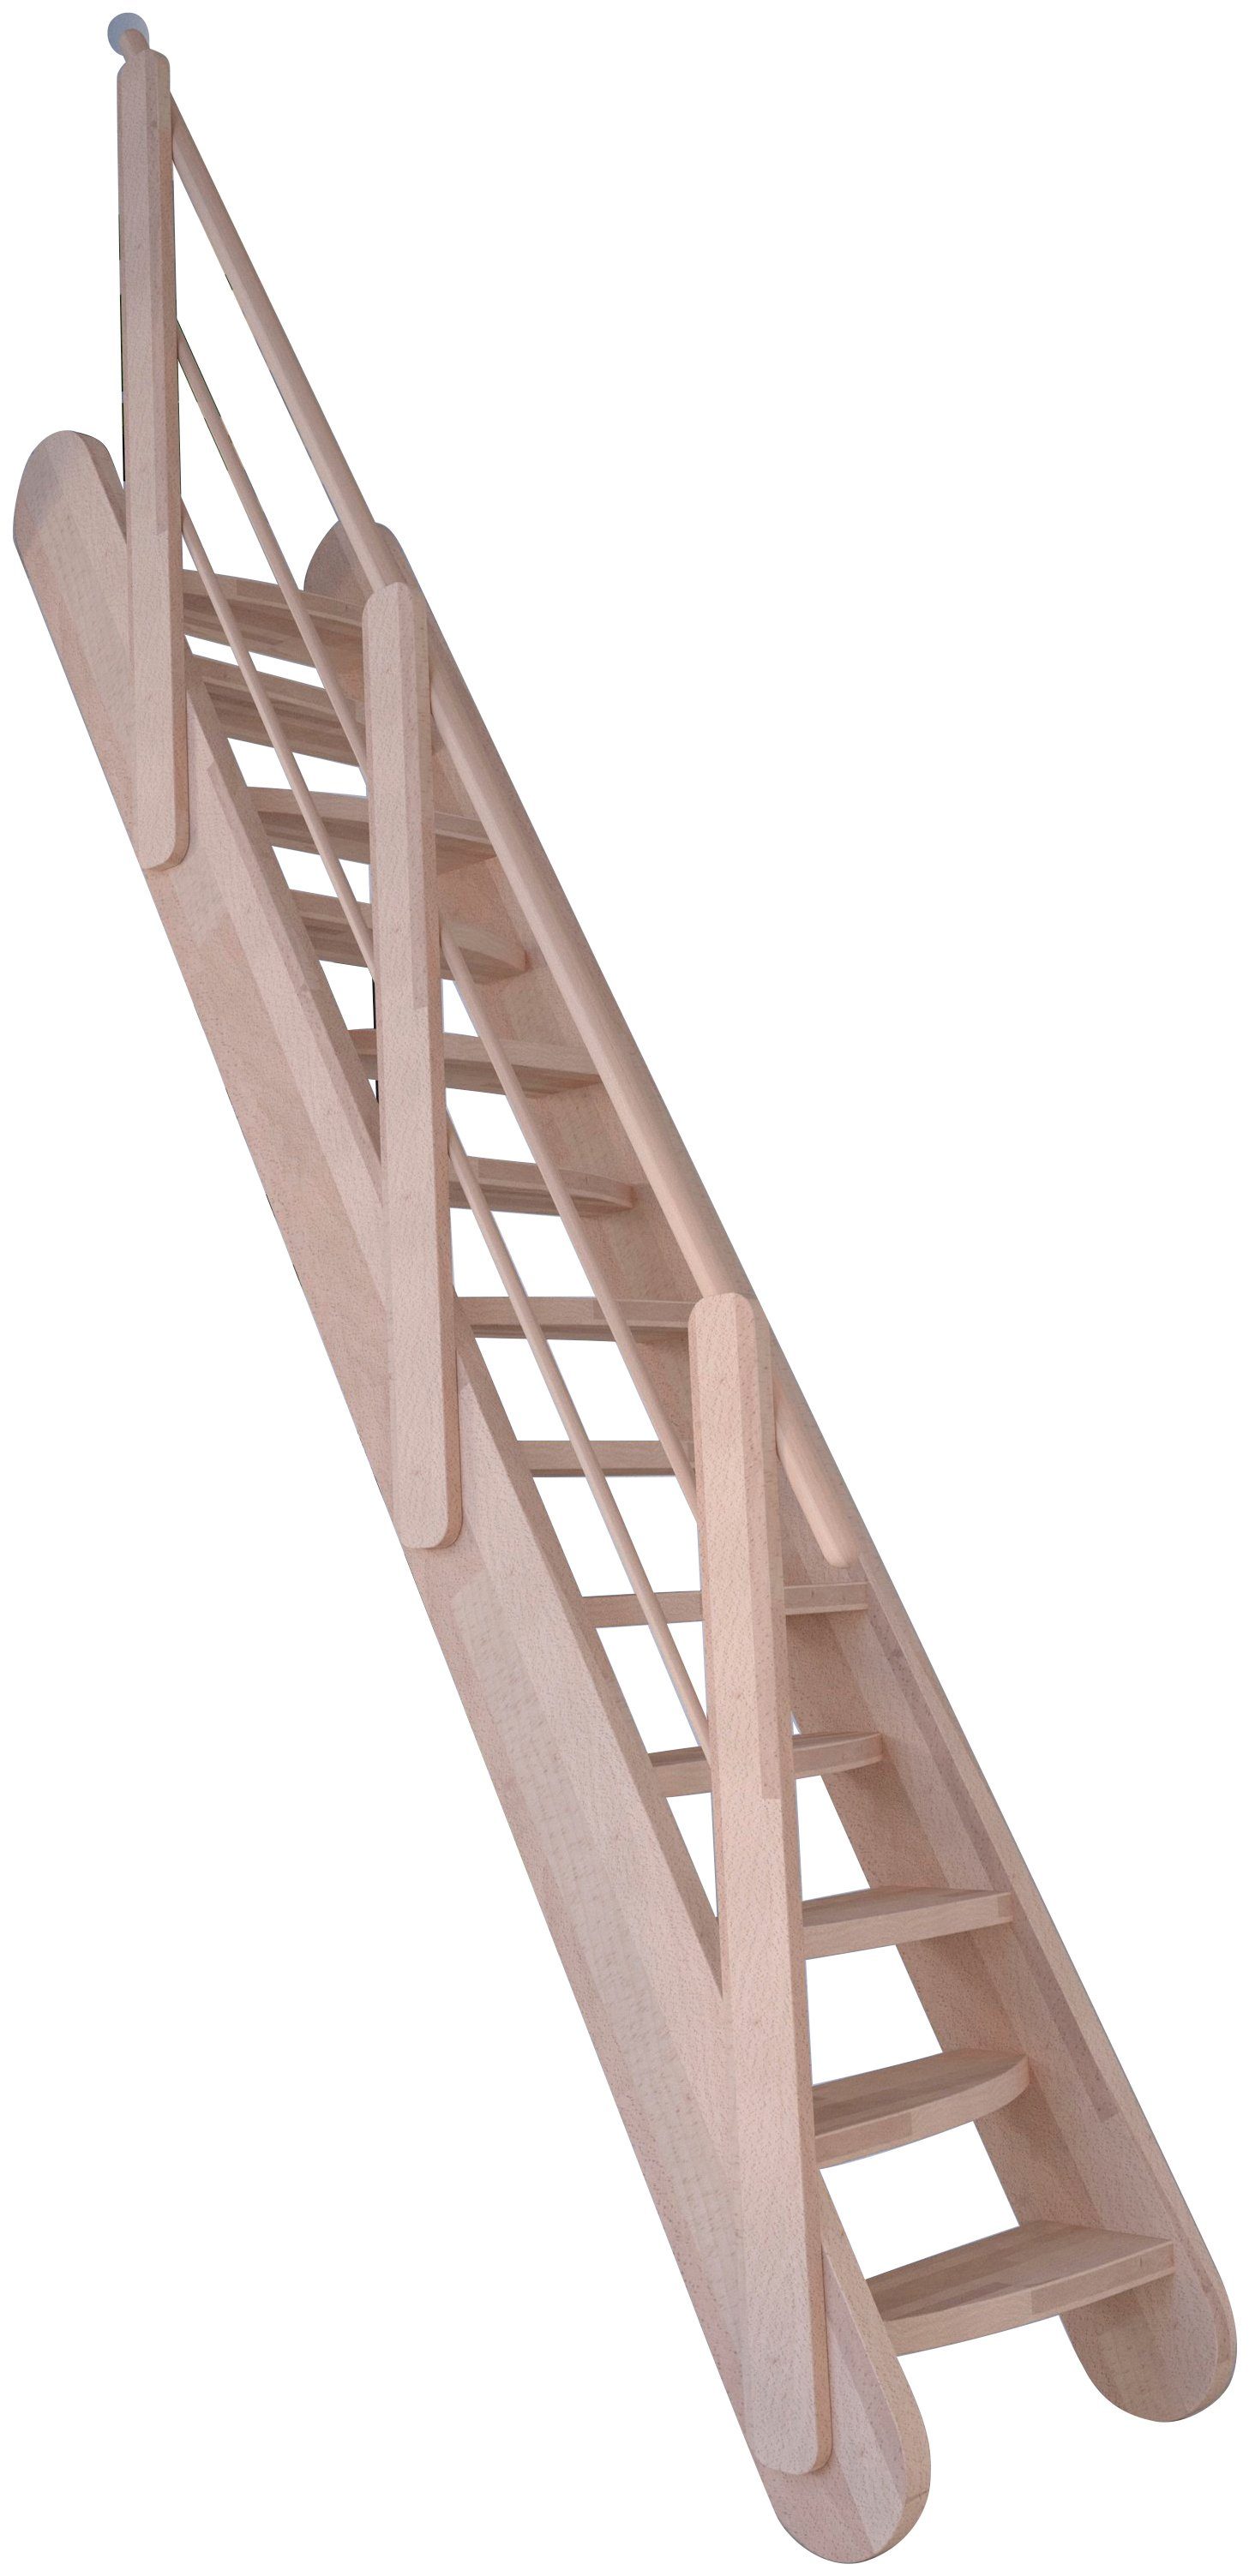 Starwood Raumspartreppe Massivholz Stufen Geländer, Durchgehende Samos, offen, Design Wangenteile Holz-Holz